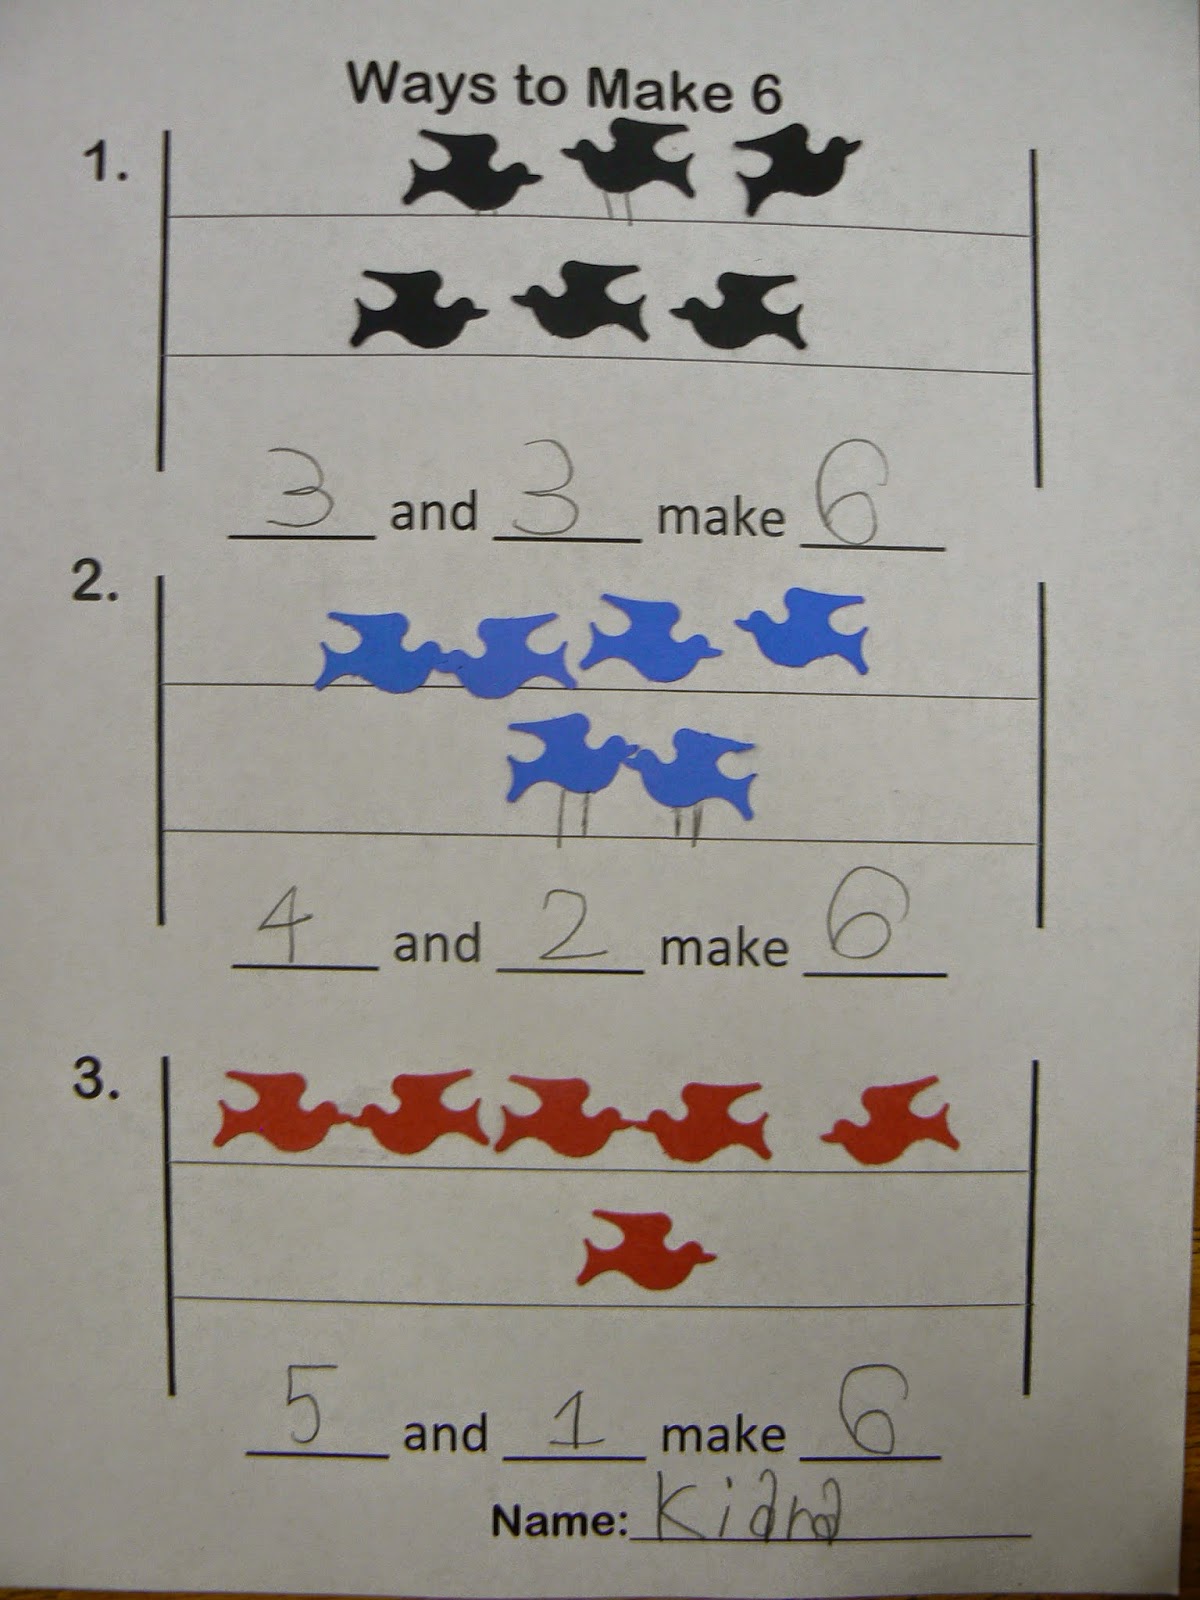 Mrs. T's First Grade Class: Ways to Make 6